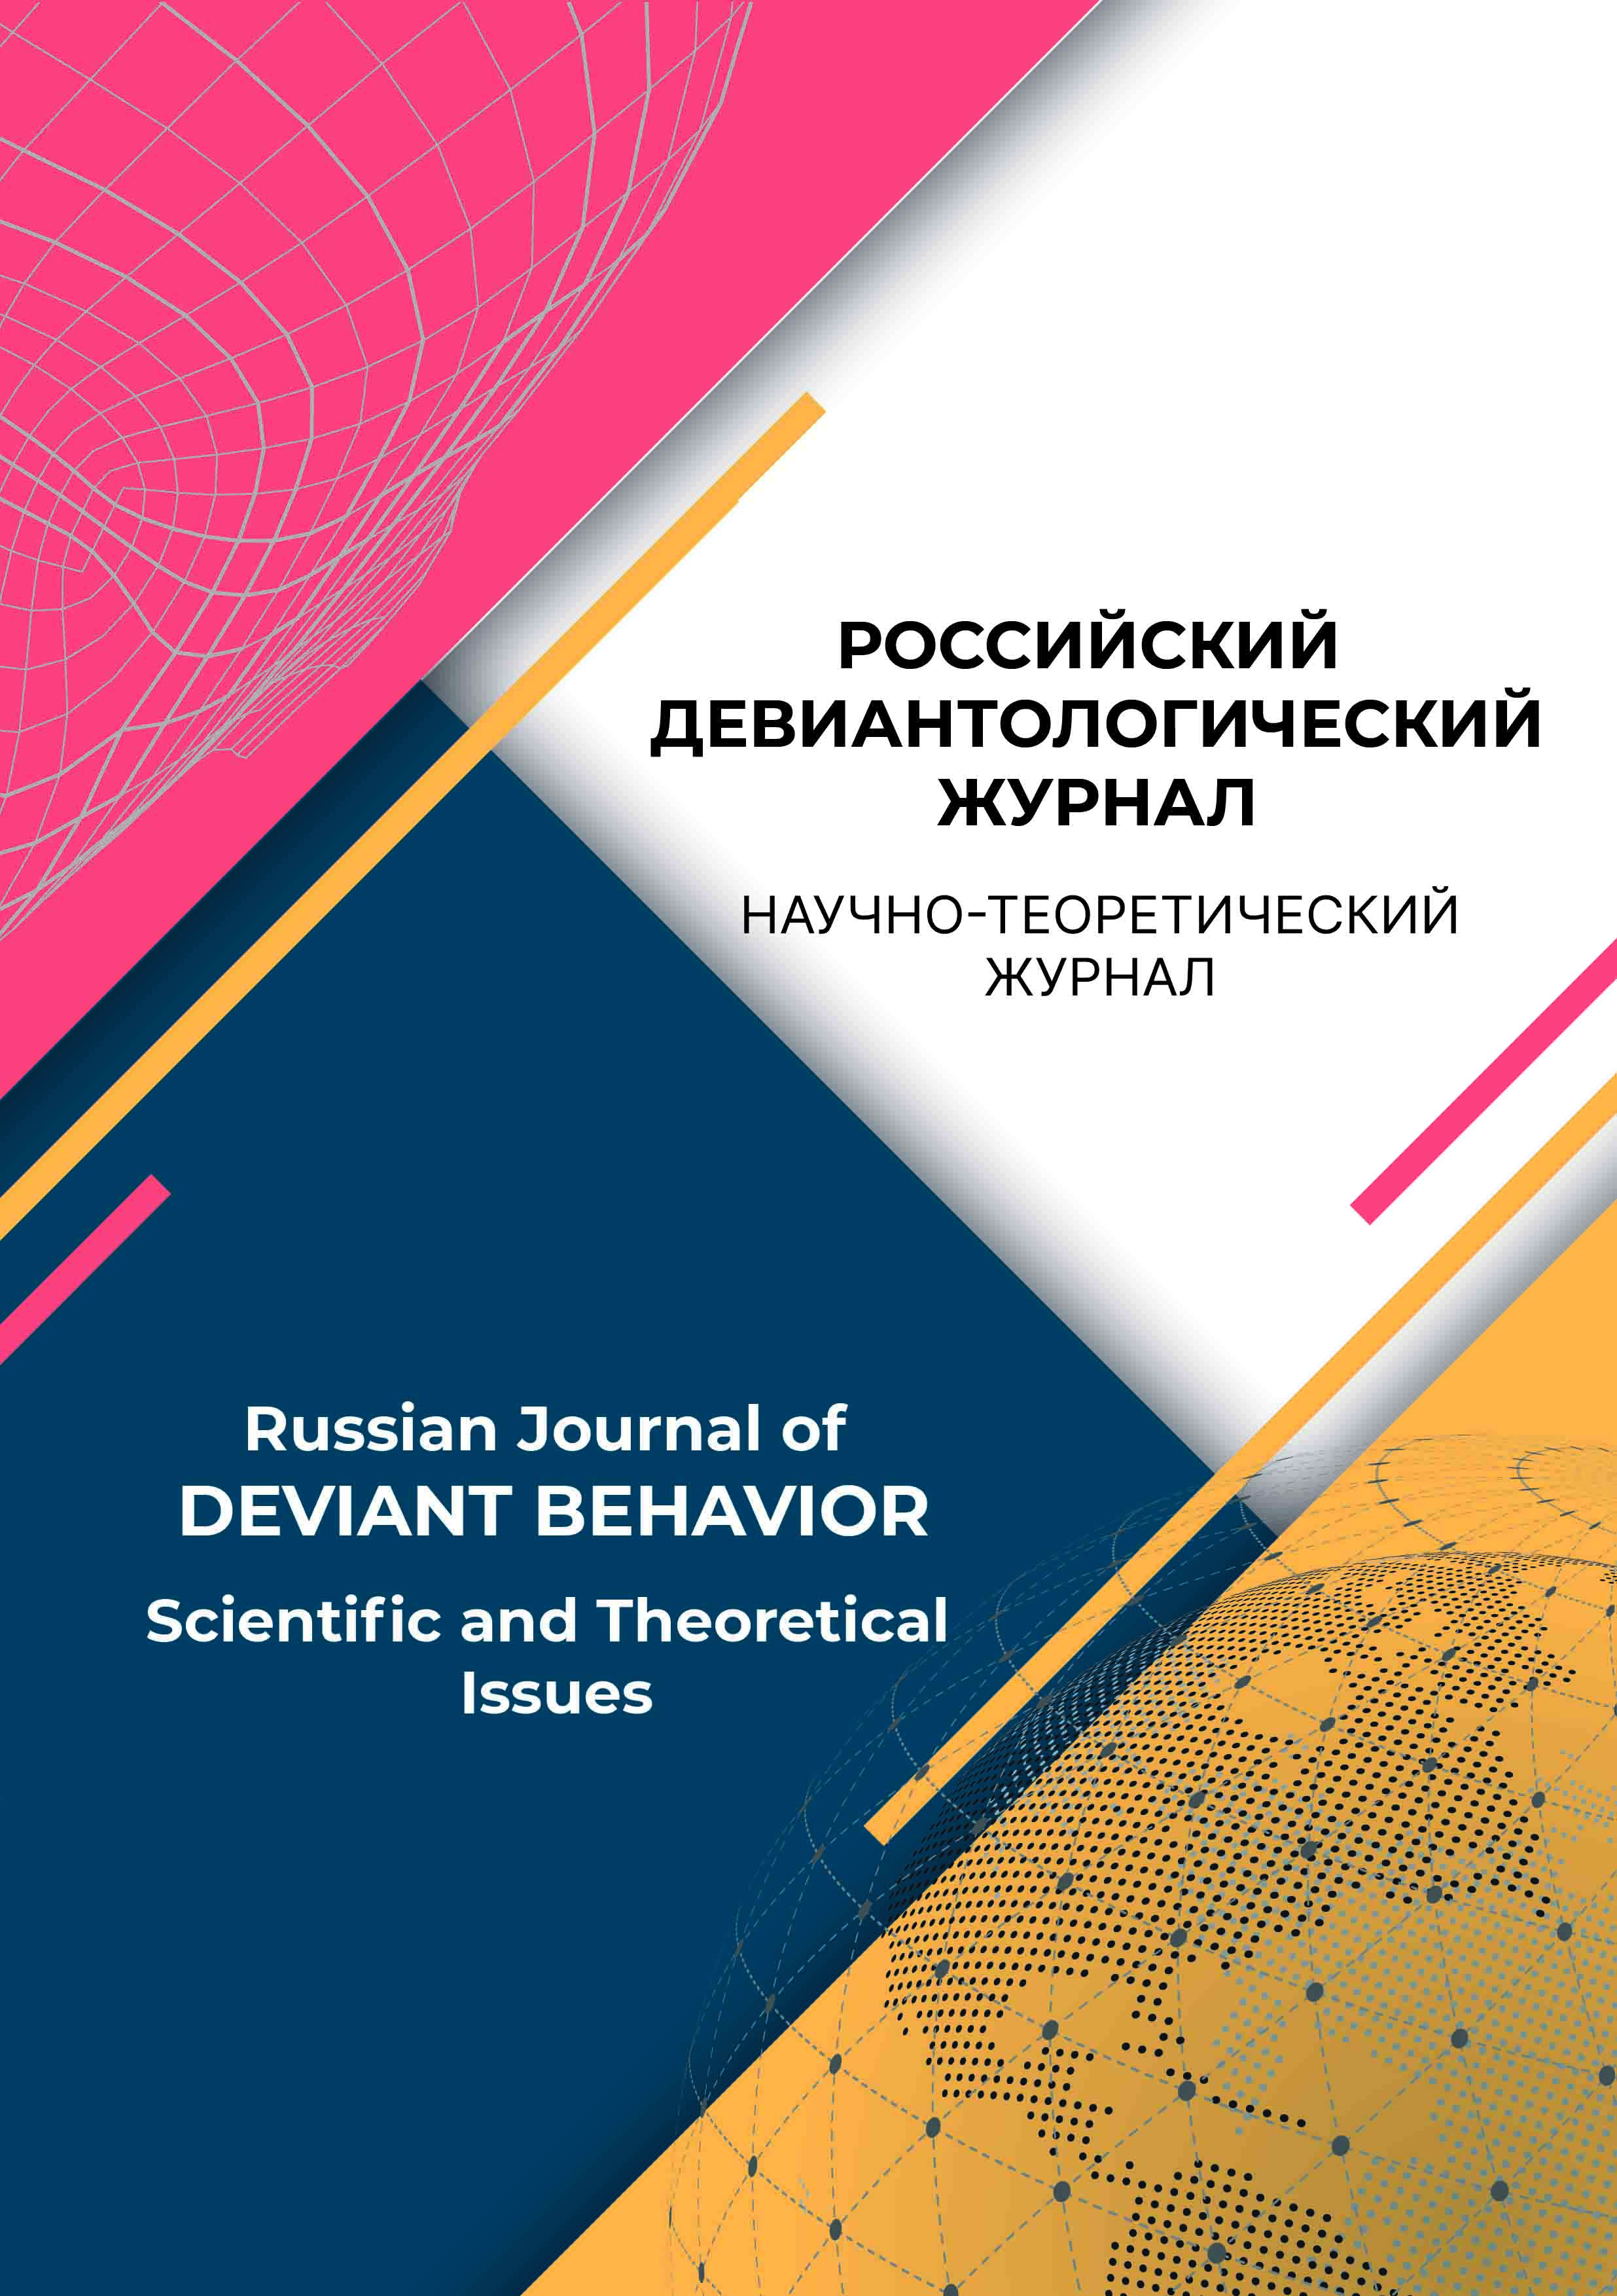             Современная российская девиантология: история, методология, социальные вызовы и актуальные тенденции
    